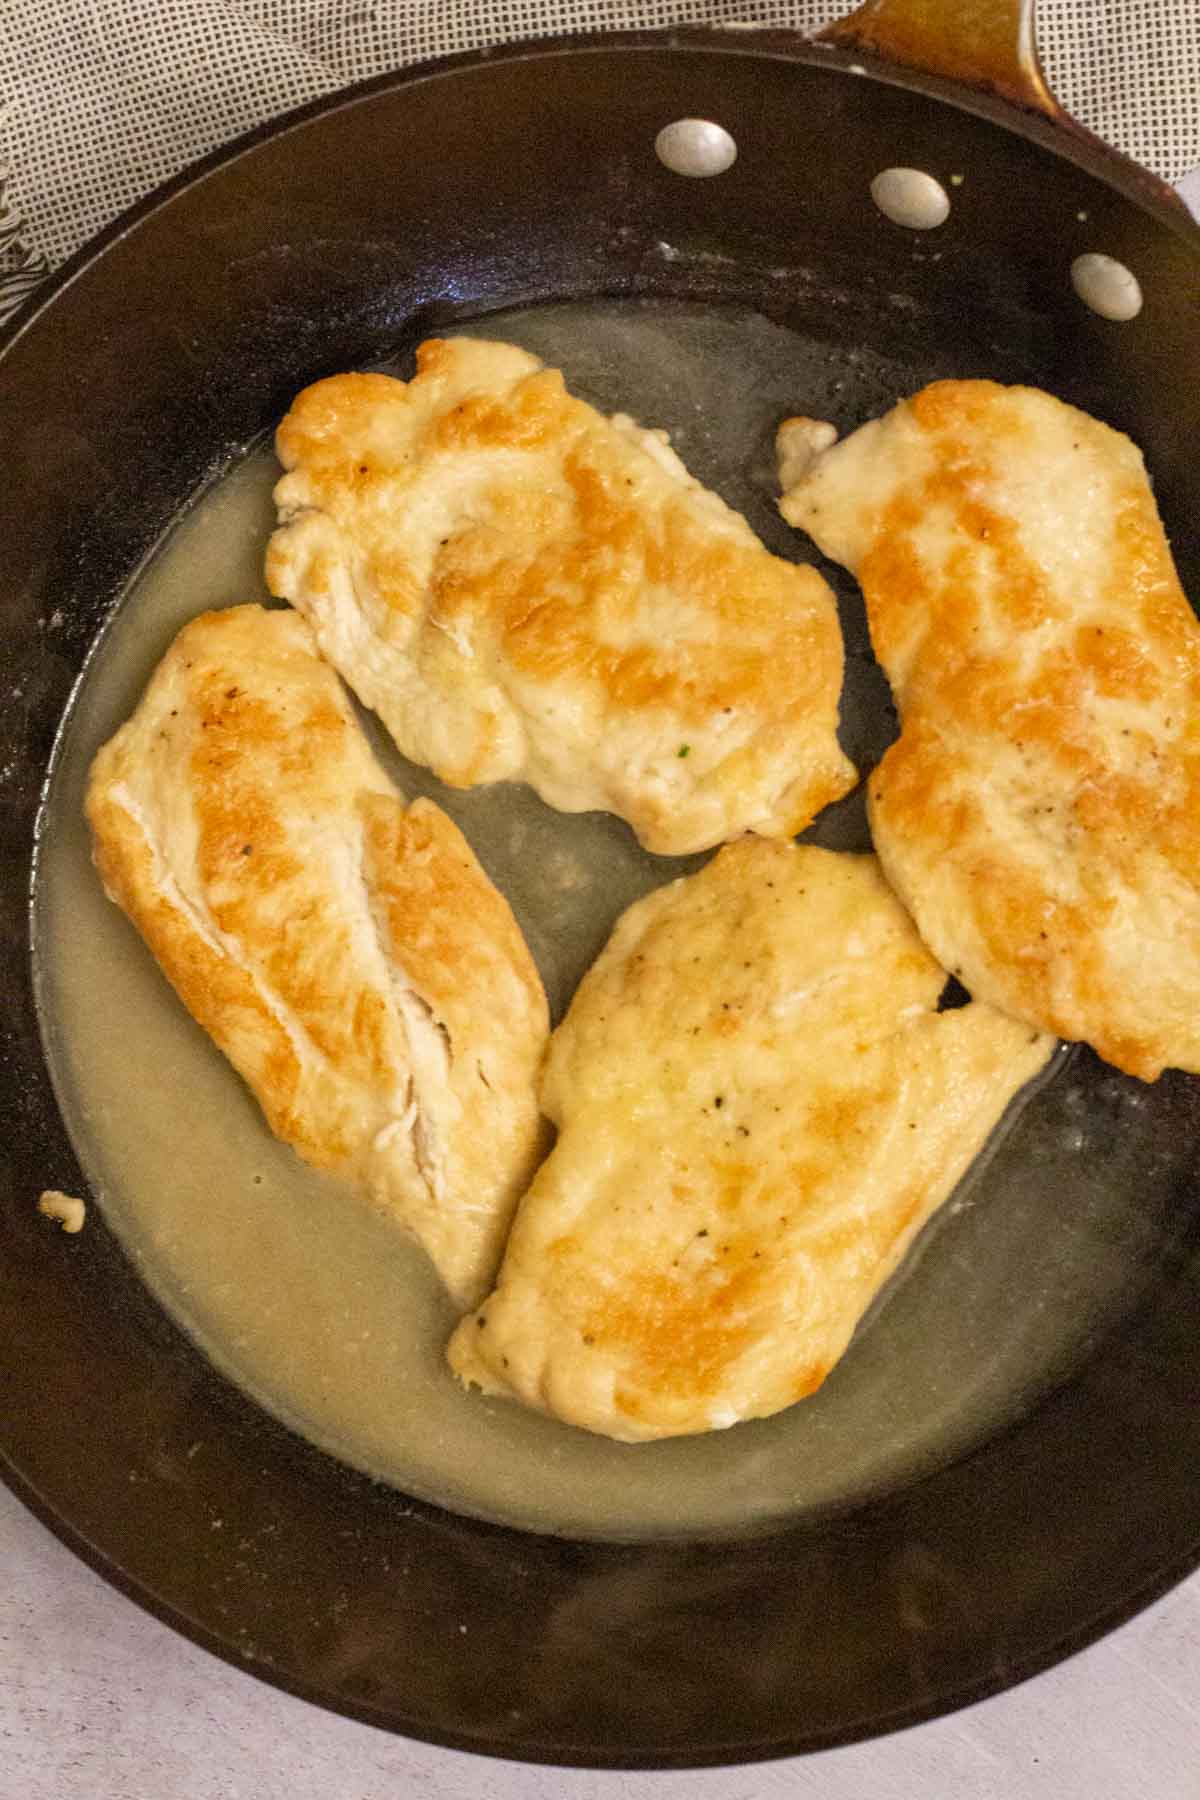 Chicken in lemon garlic sauce.